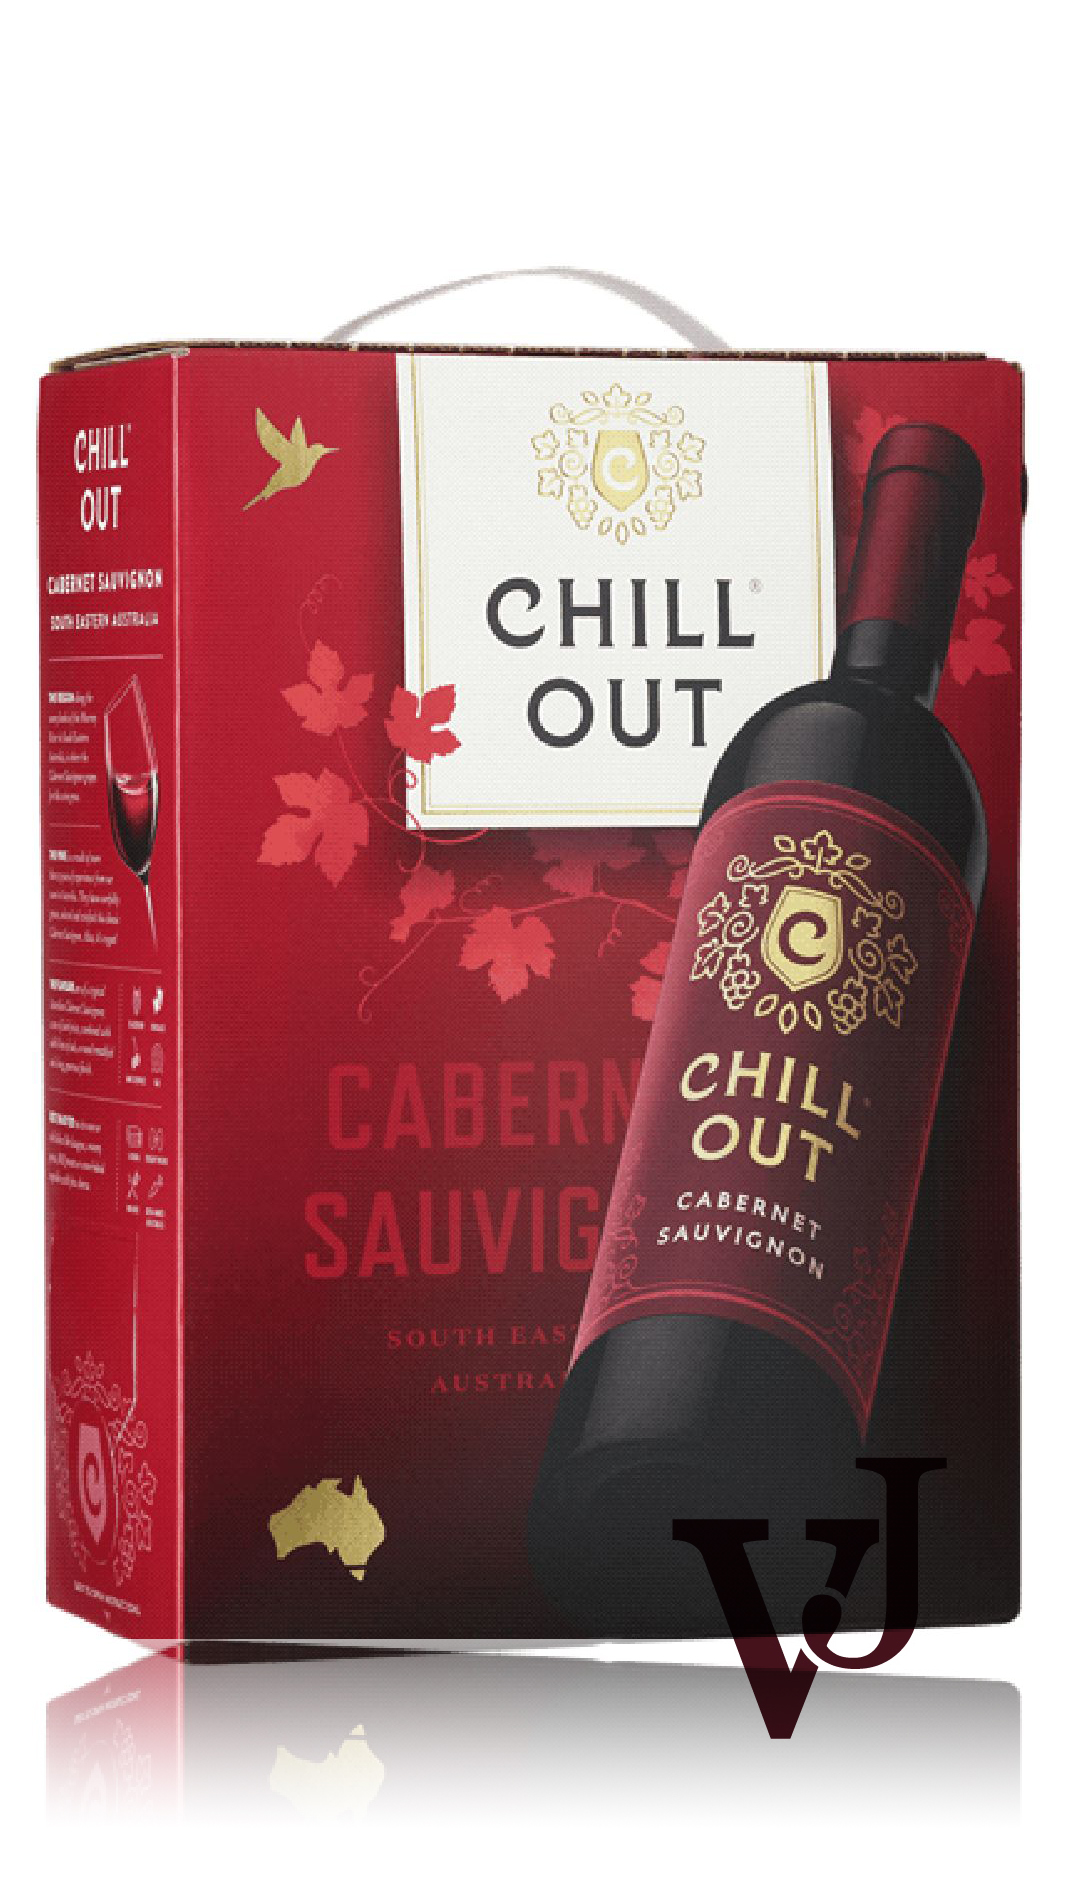 Rött Vin - CHILL OUT Cabernet Sauvignon Australia artikel nummer 687308 från producenten Altia från området Australien